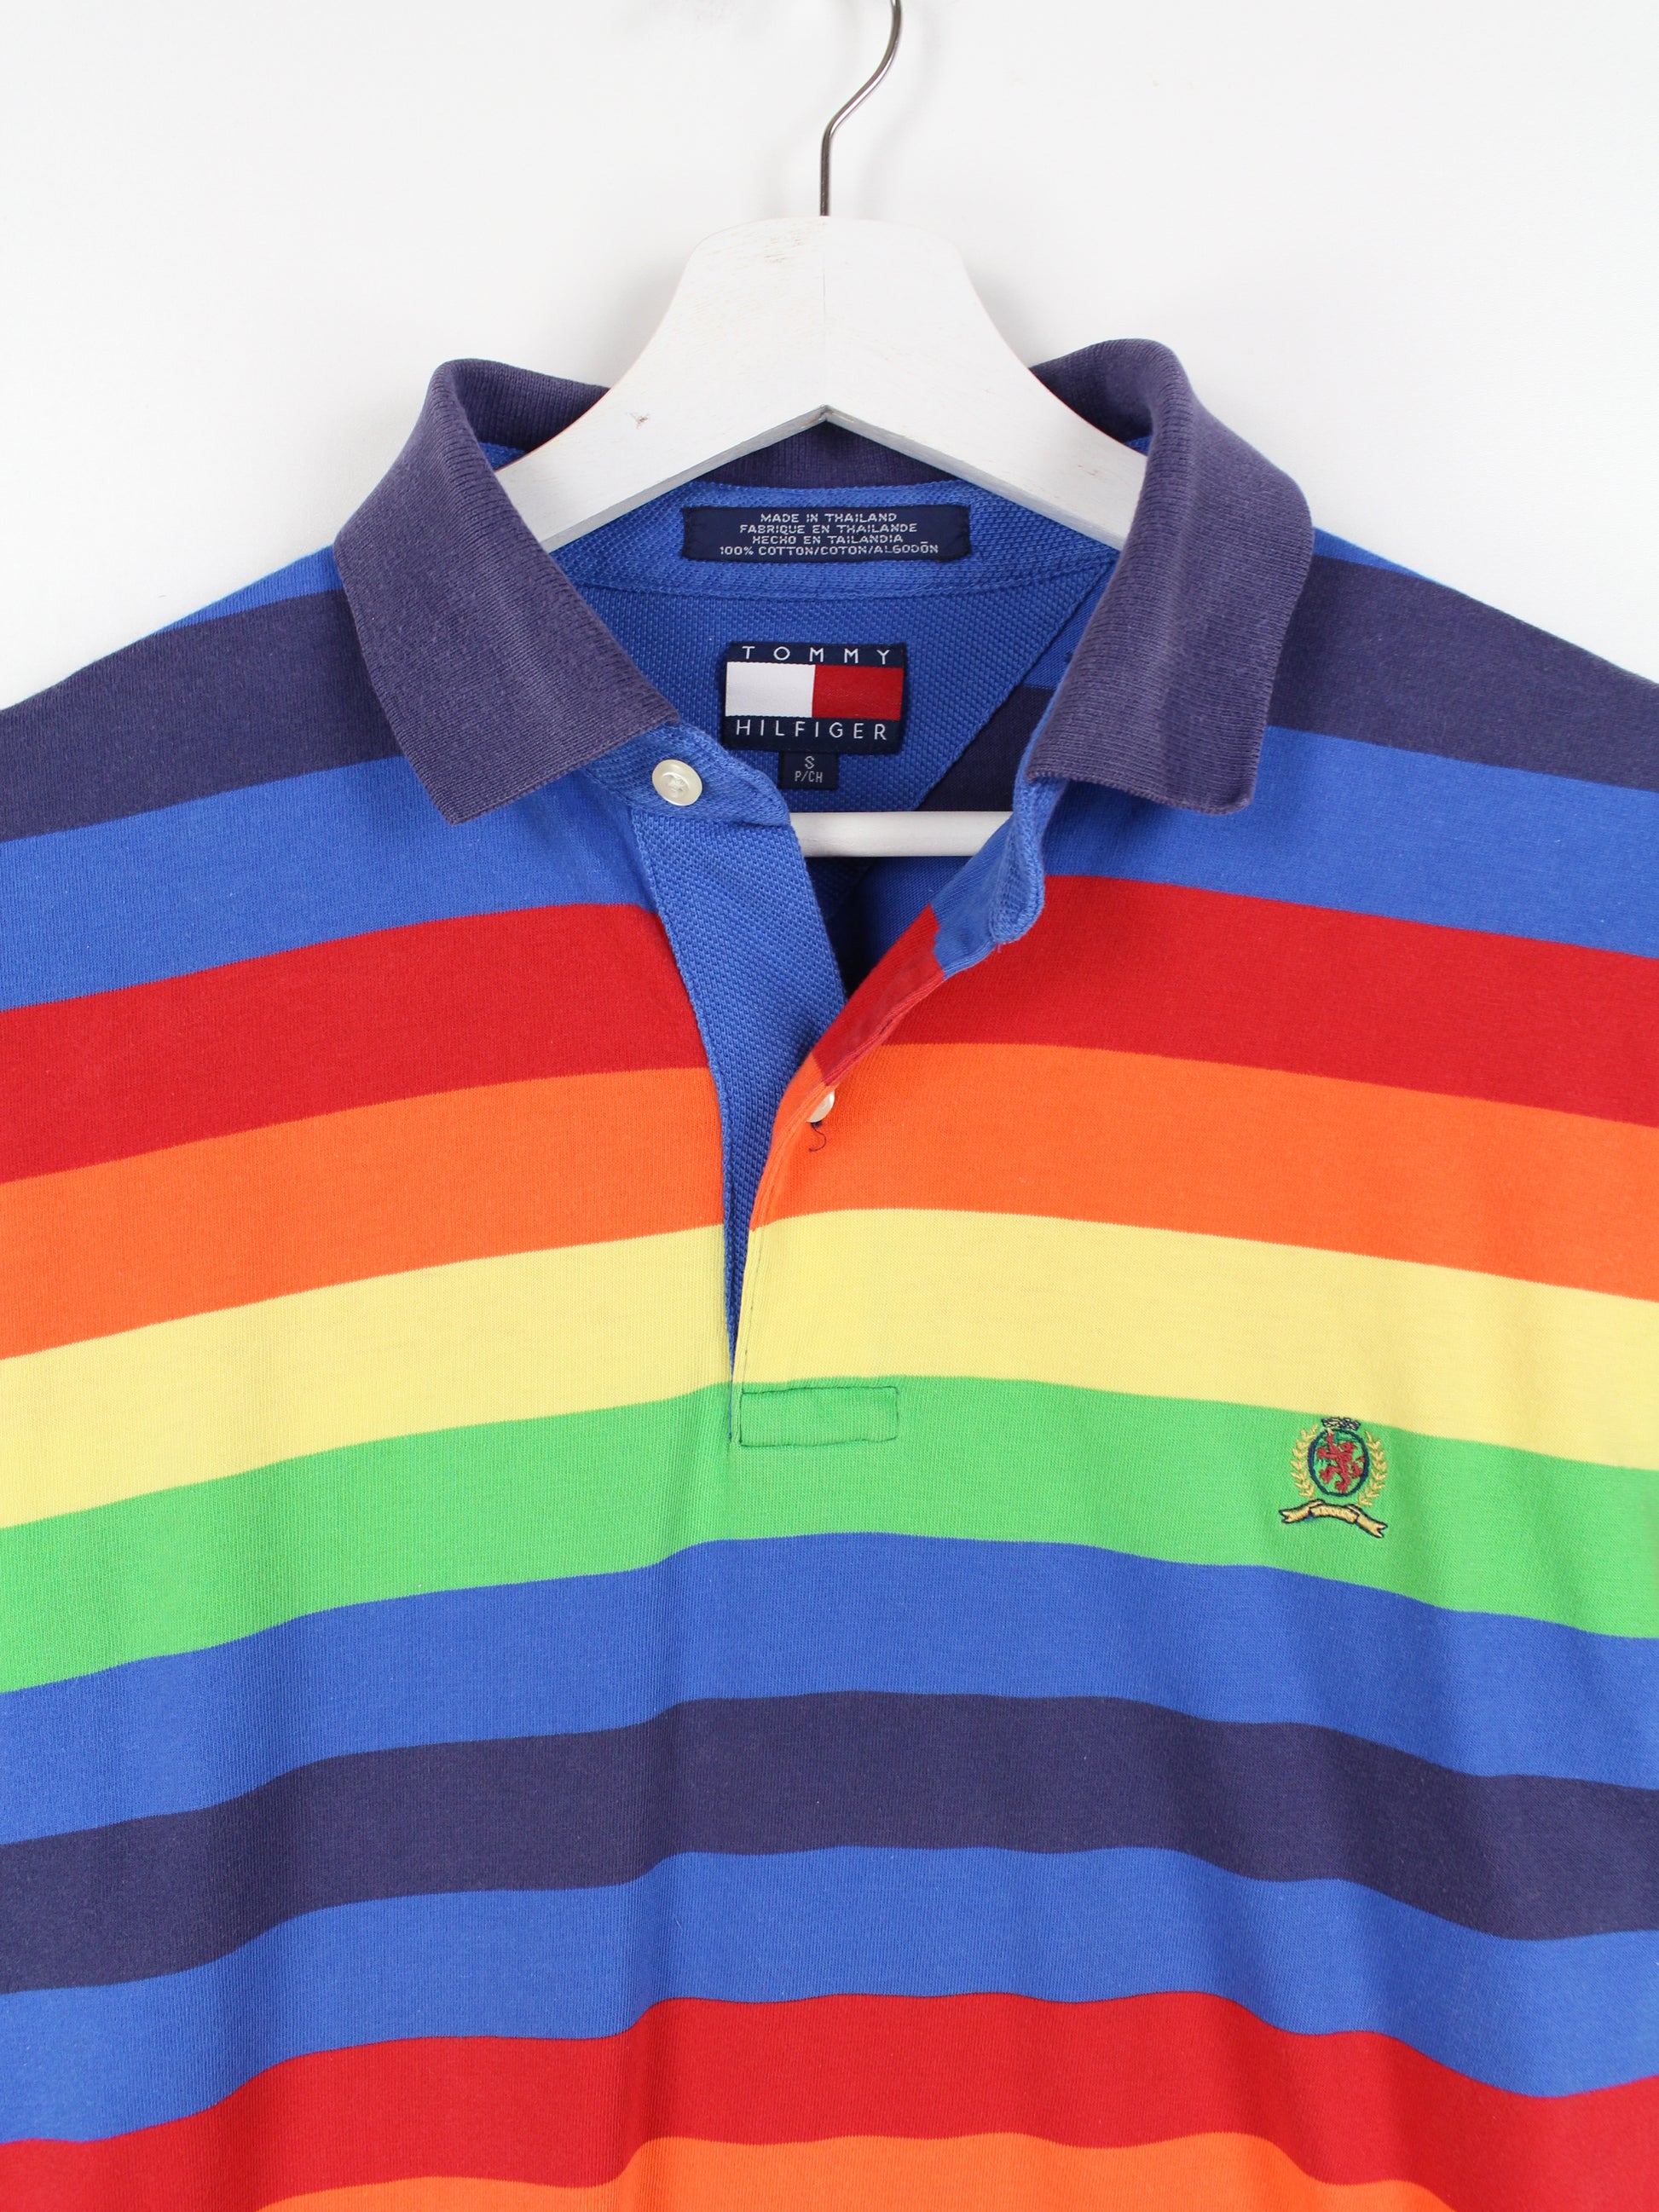 [Es ist seit dem Erscheinen des Verkaufs populär geworden] Tommy Hilfiger Polo Shirt Striped S – Multicolored Peeces